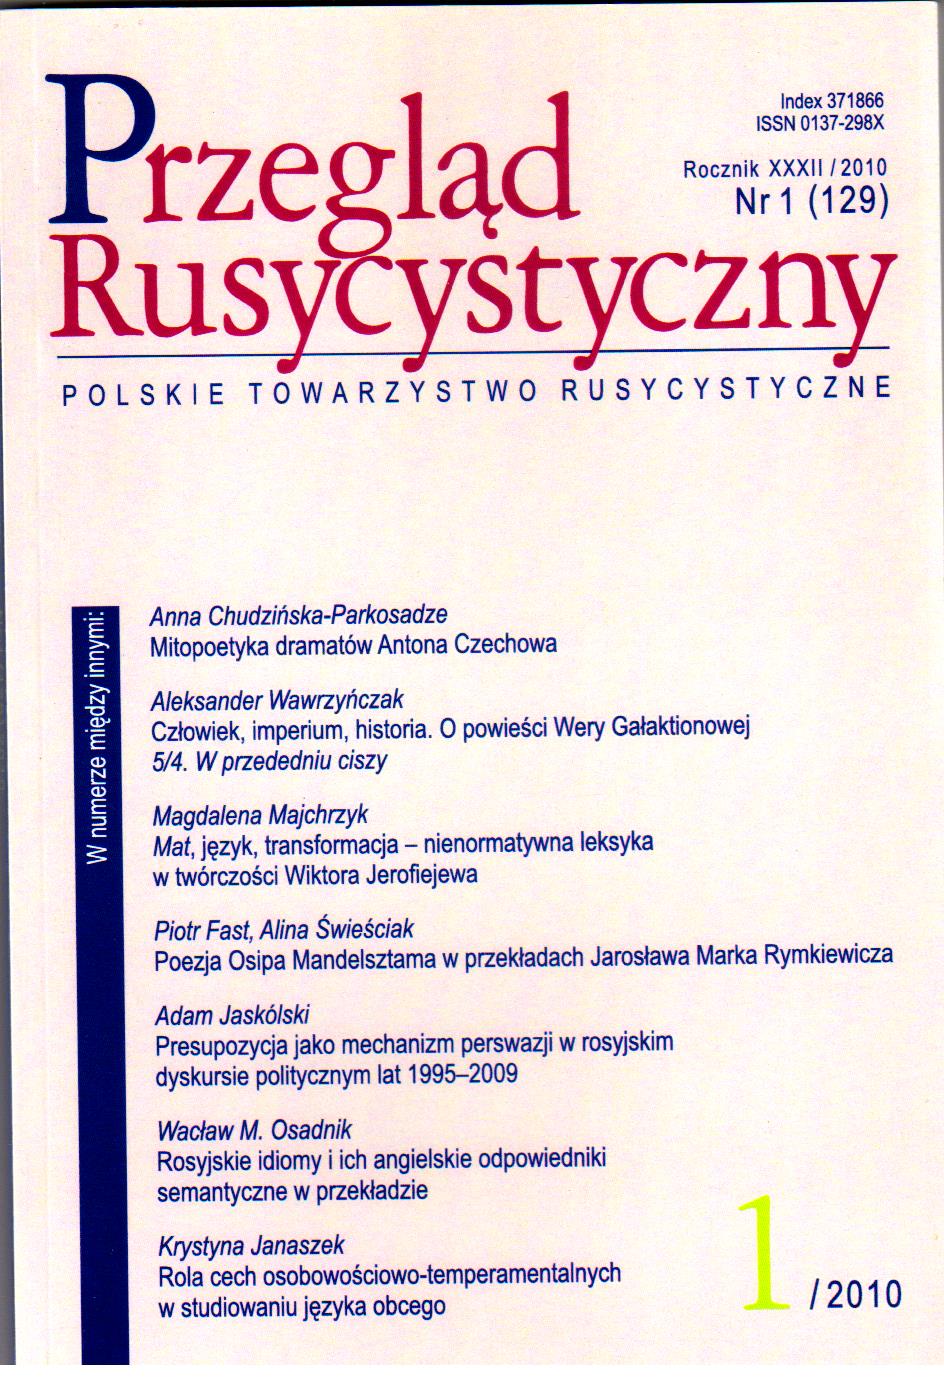 Presupozycja jako mechanizm perswazji w rosyjskim dyskursie politycznym z lat 1995–2009